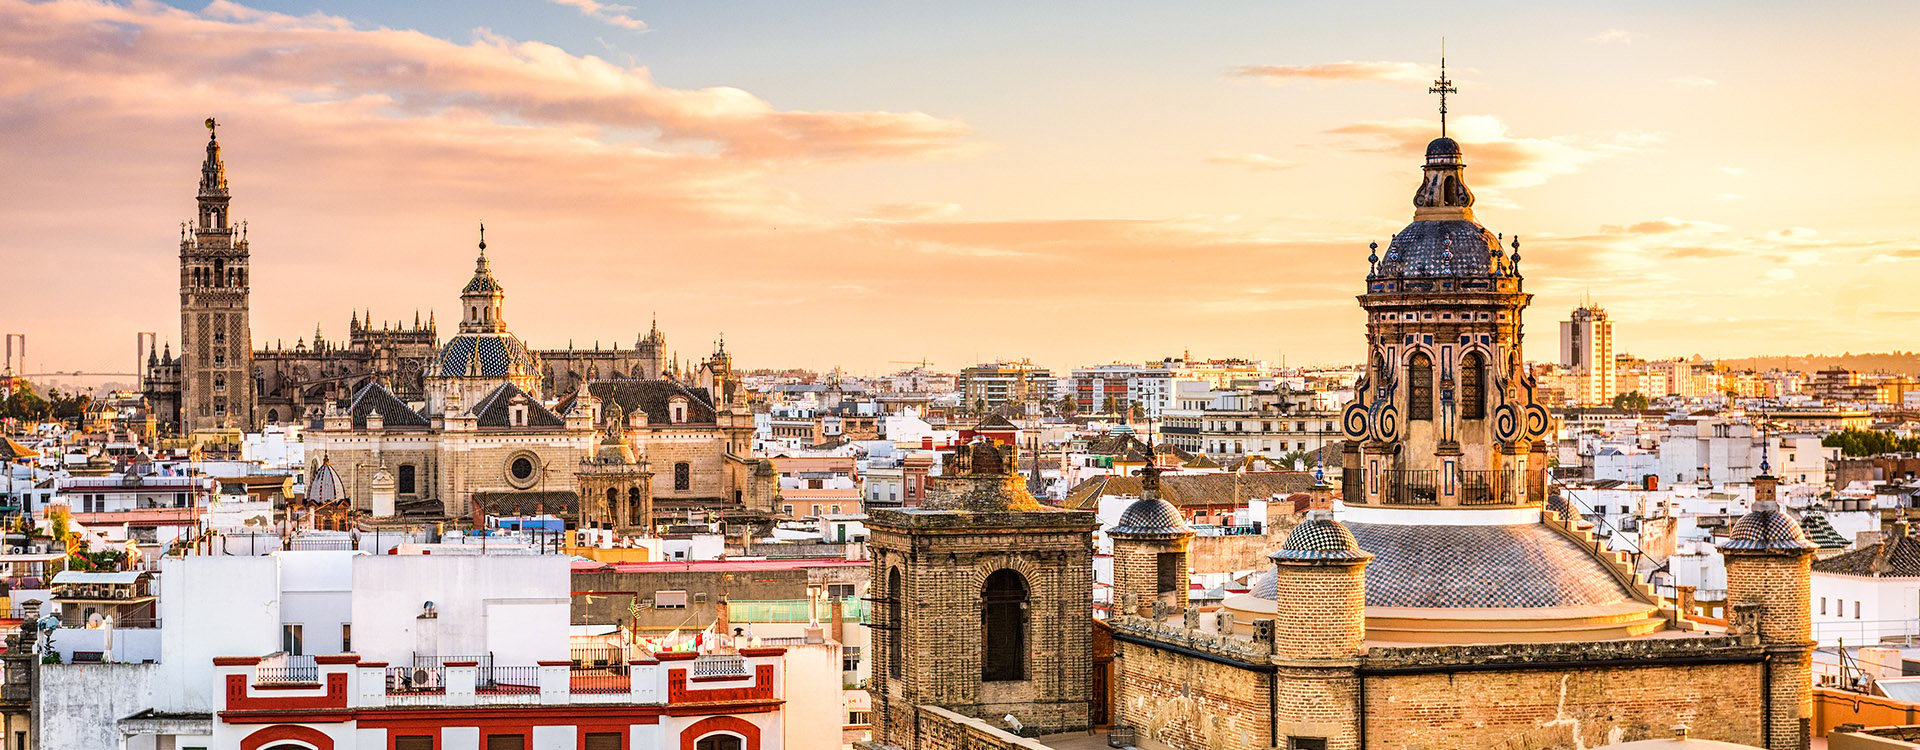 Seville, Spain skyline in the Old Quarter